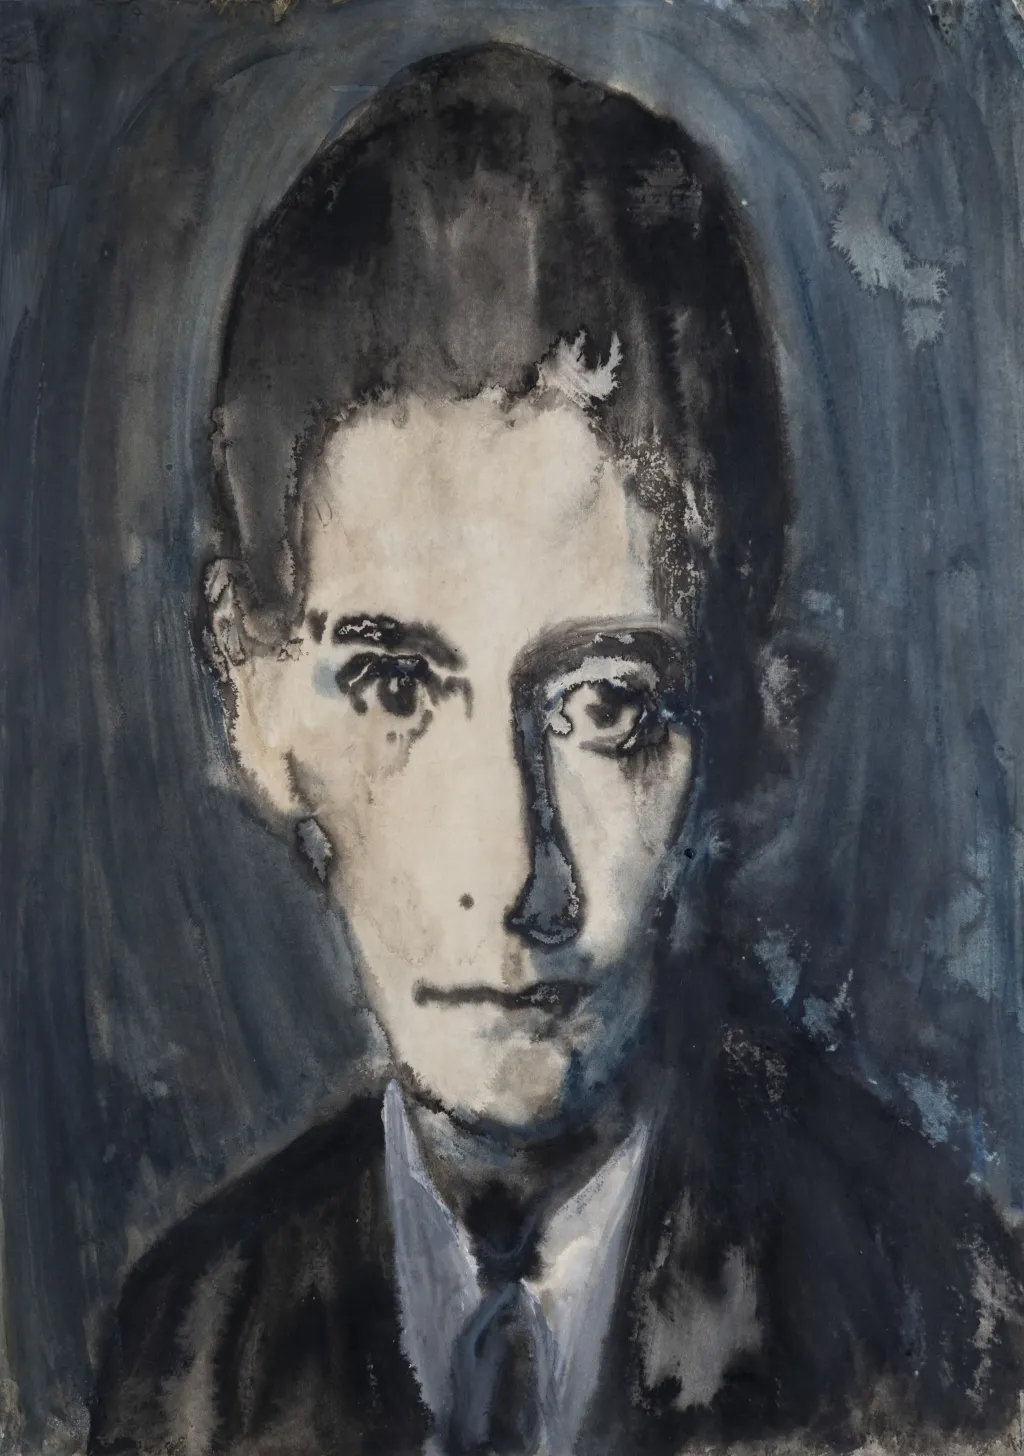 Německy píšící pražský rodák Franz Kafka je jedním z klíčových autorů kulturního světa dvacátého století. Během života publikoval student práv a později dlouholetý úředník úrazové pojišťovny pouze několik děl, která se nesetkala s větším ohlasem. Celosvětového věhlasu se mu začalo dostávat až po jeho smrti, když jeho přítel Max Brod nevyhověl poslední vůli a nespálil Kafkovo dílo